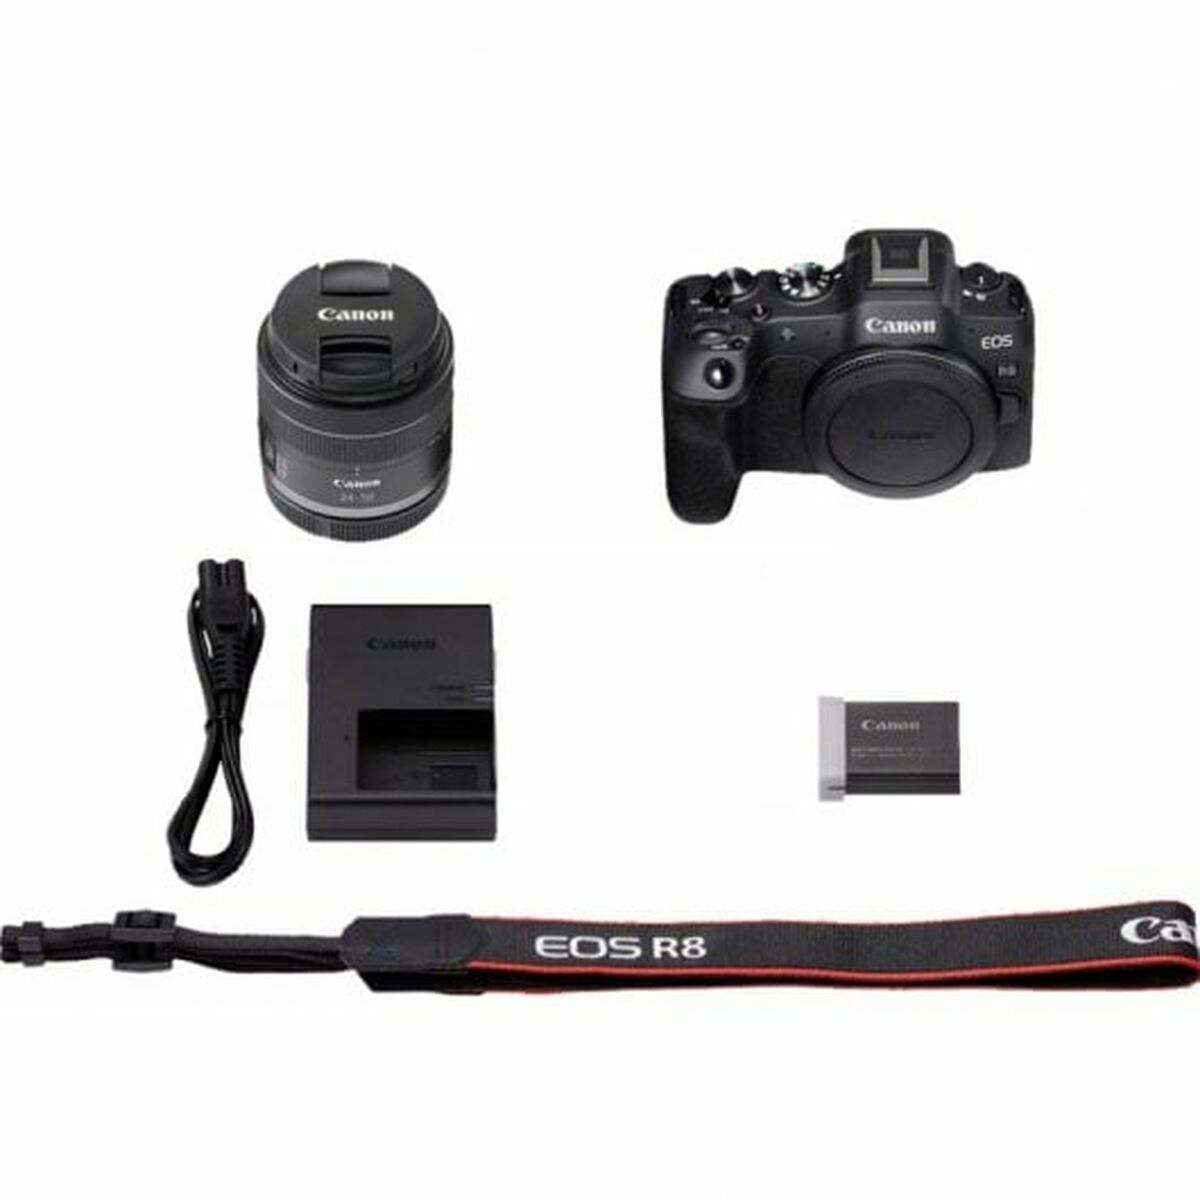 Ψηφιακή φωτογραφική μηχανή Canon 5803C013